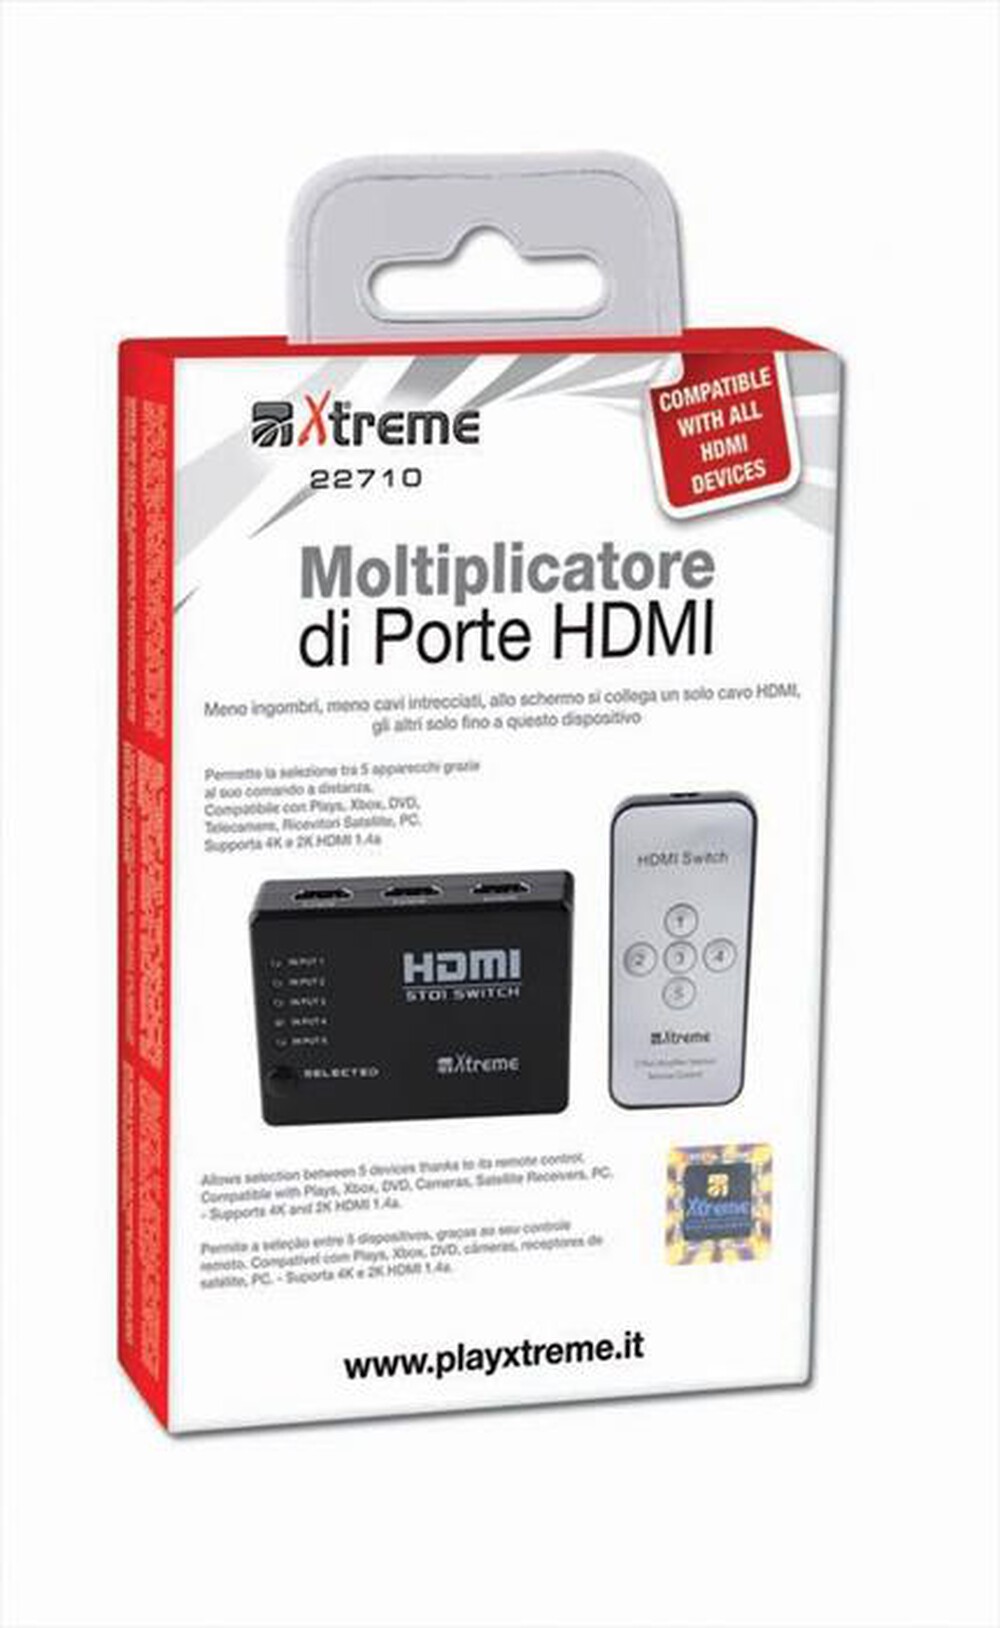 "XTREME - 22710 - Moltiplicatore di porte HDMI"